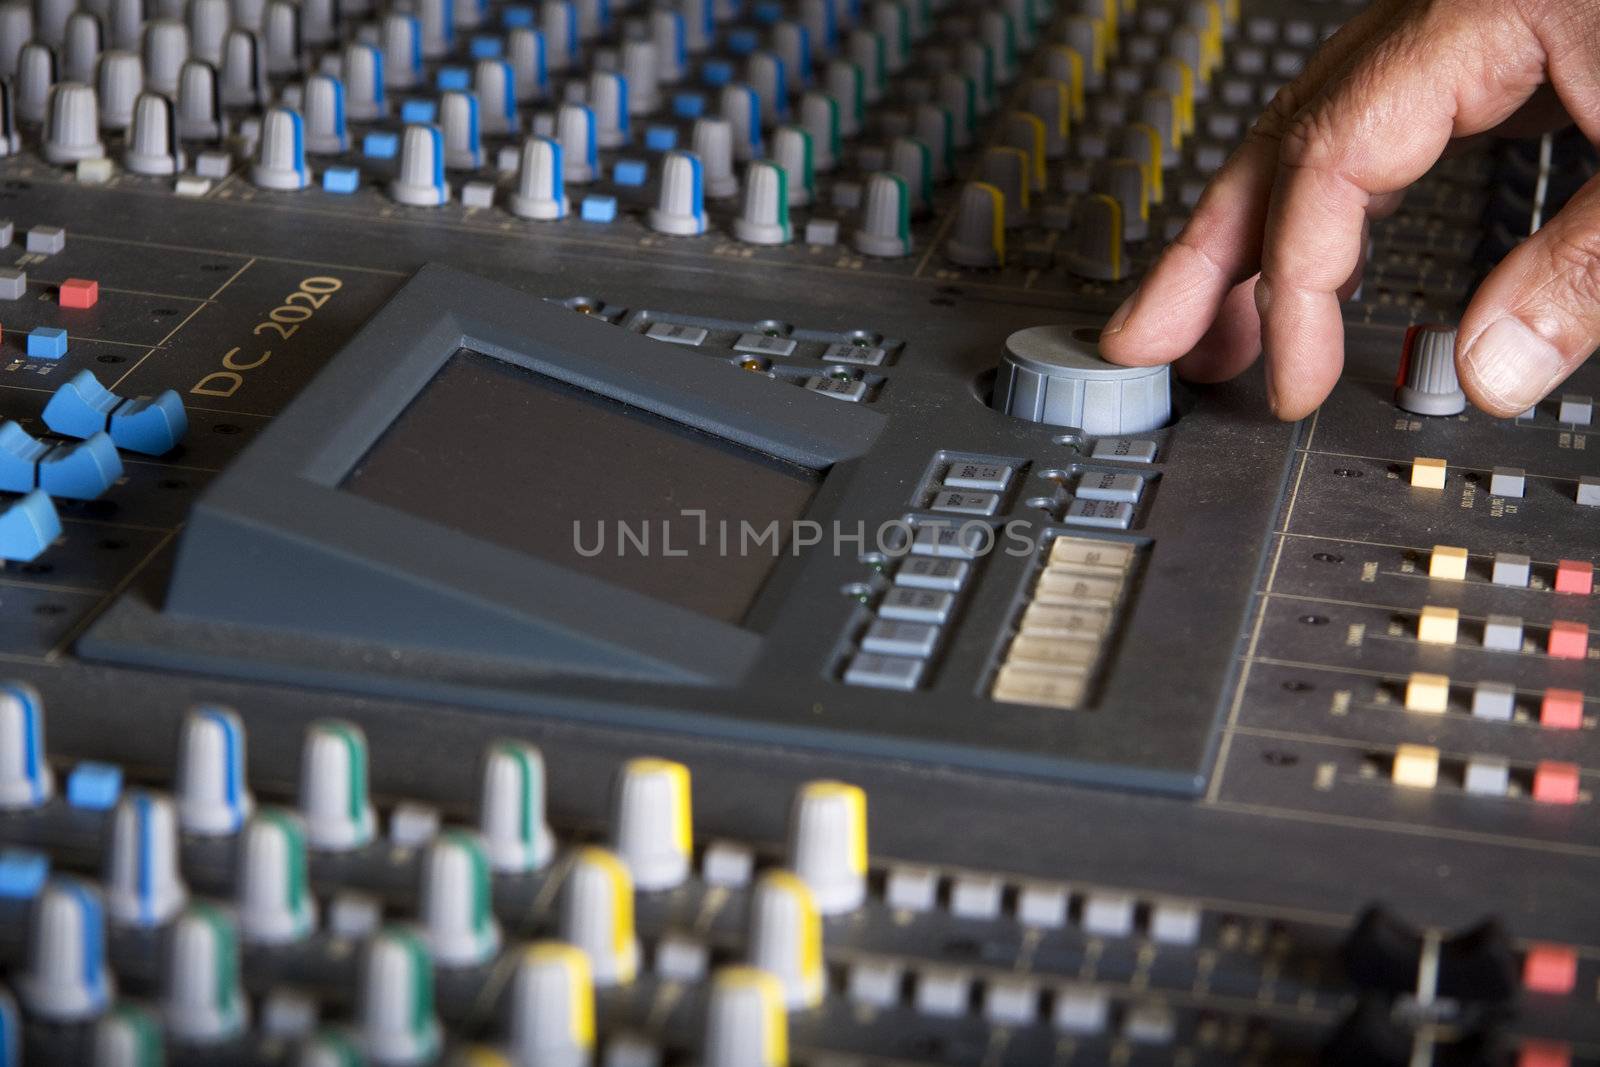 Pro mixing pult at a recording studio